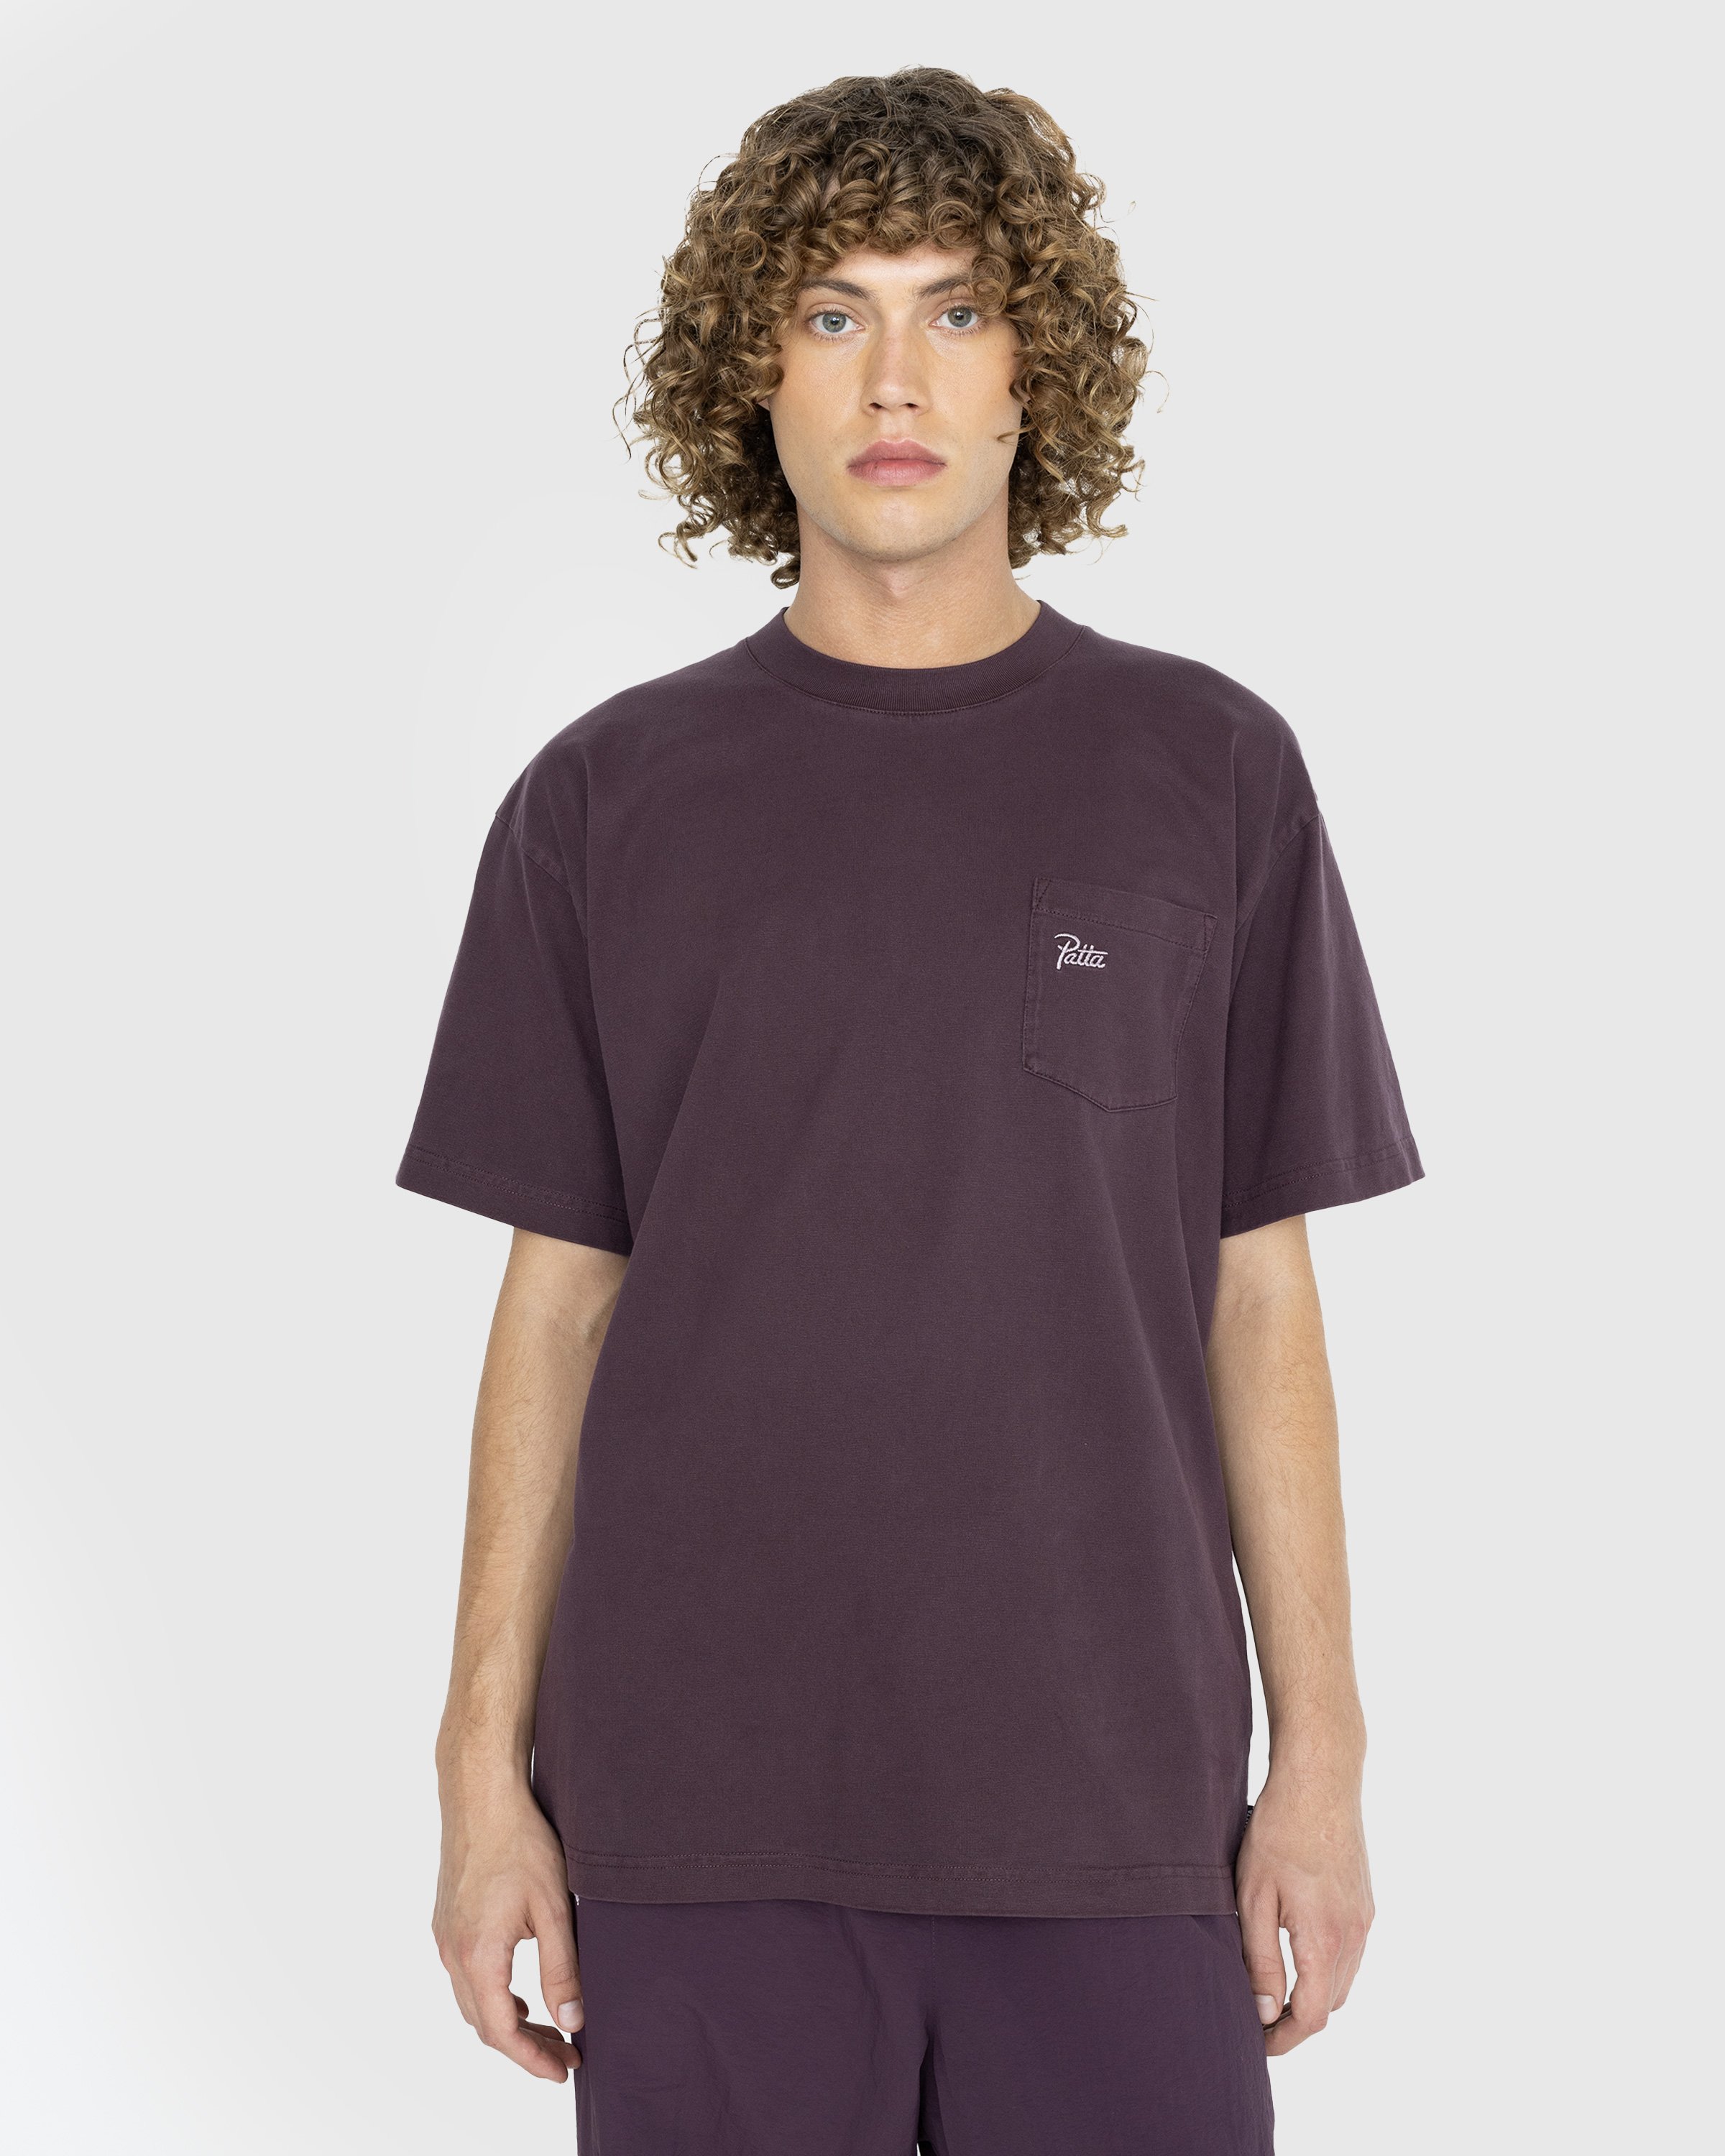 Patta - Basic Washed Pocket T-Shirt Plum Perfect - Clothing - Purple - Image 2